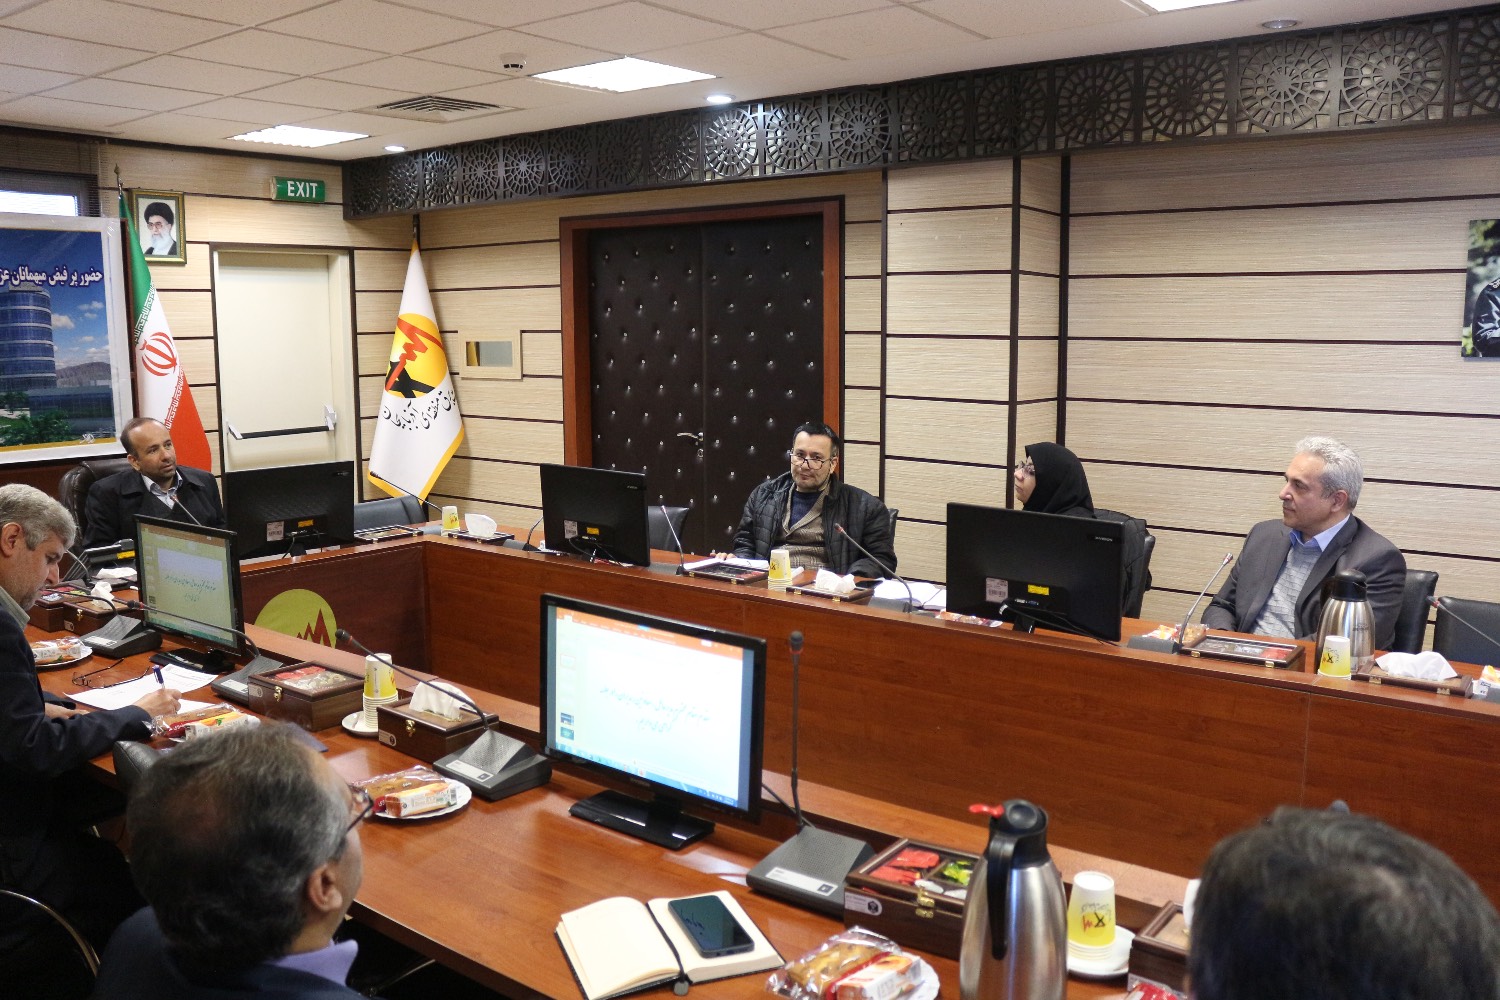 سومین جلسه "کمیسیون توسعه مدیریت" شرکت برق منطقه ای آذربایجان با حضور مدیرعامل این شرکت برگزار شد